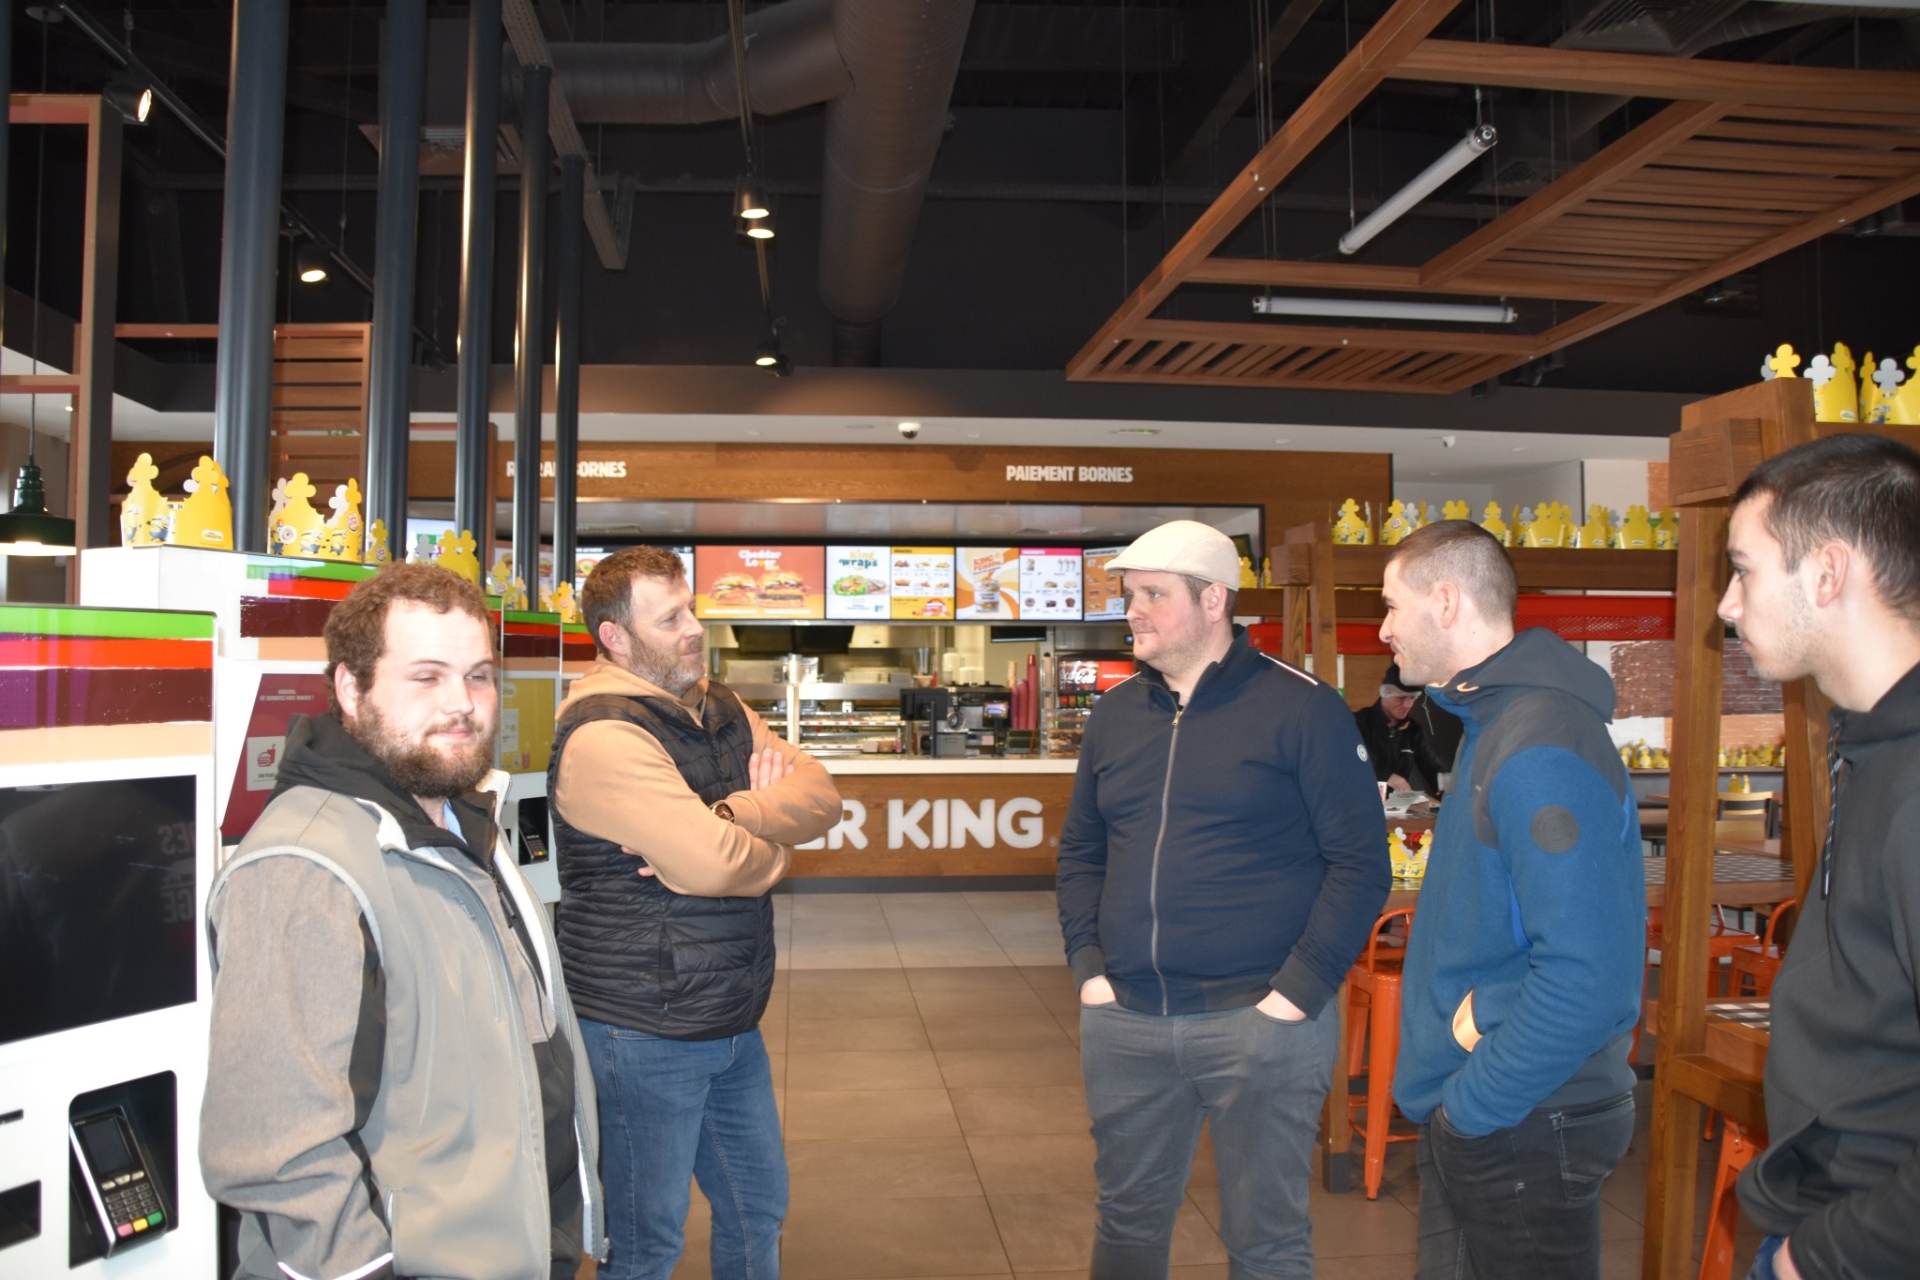 Les éleveurs mobilisés pour obtenir les bons de livraison de Burger King, à Montceau-les-Mines.